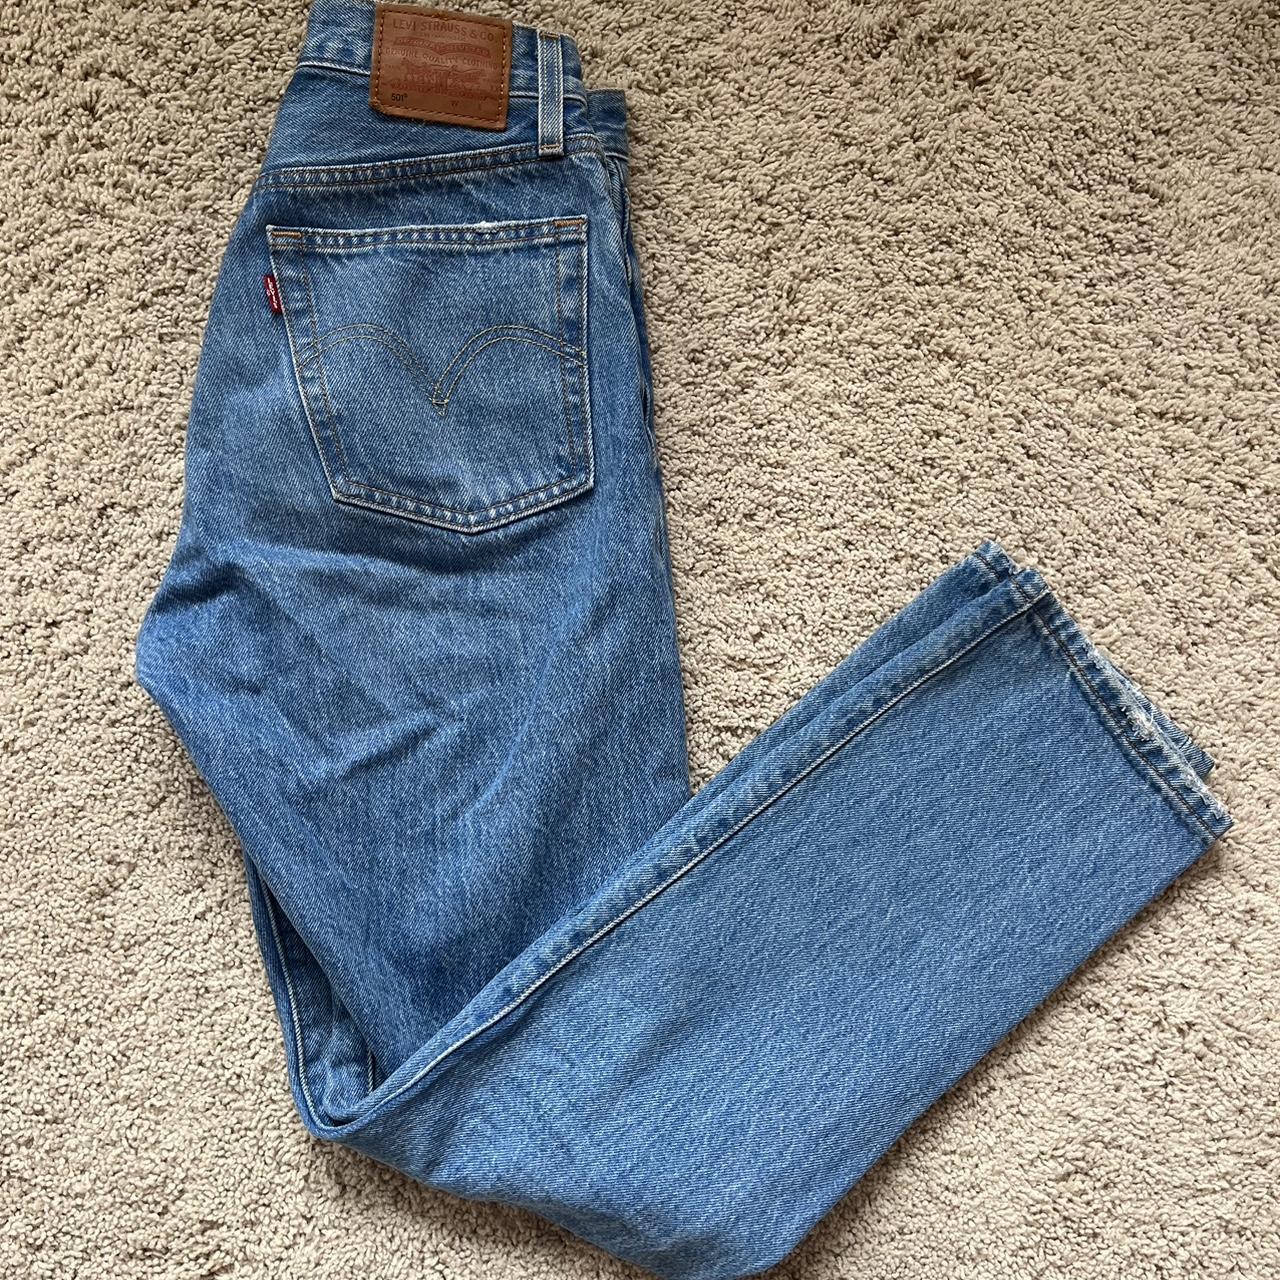 levi’s 501 jeans original levi’s 501’s waist size... - Depop